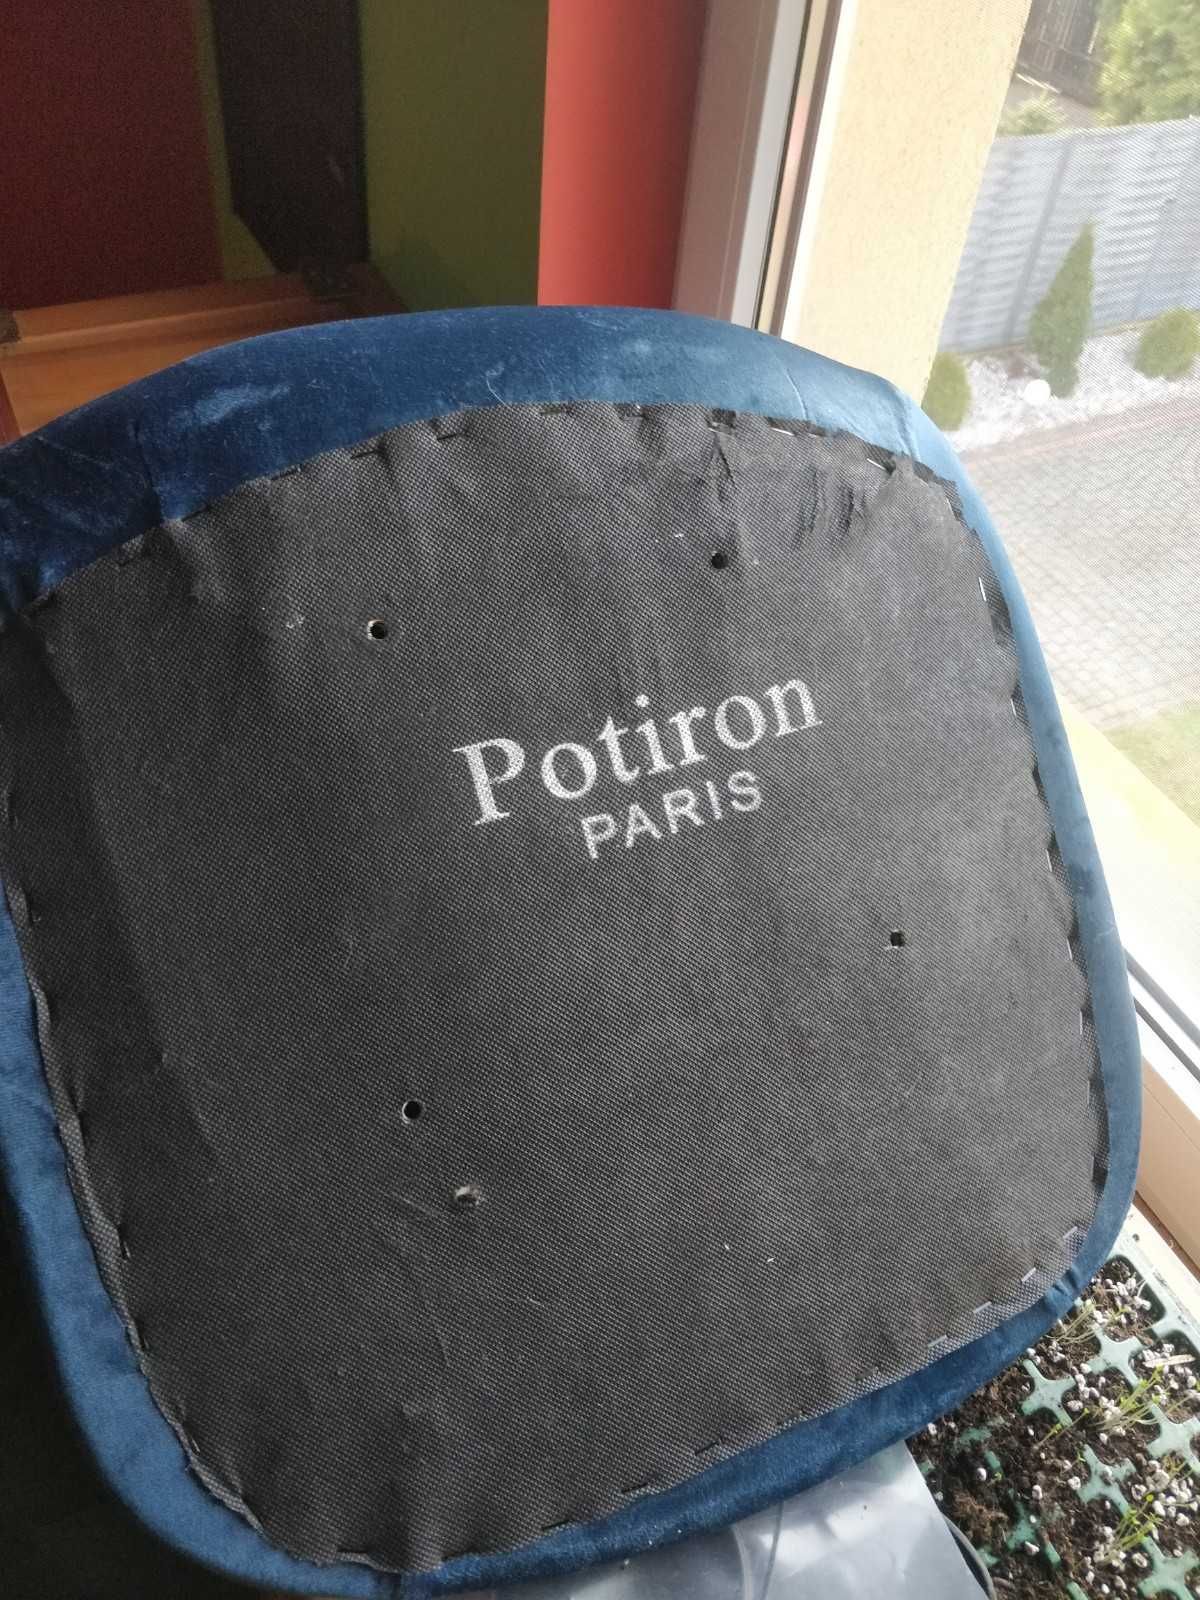 Krzeszło/siedzisko Potiron PARIS NOWE